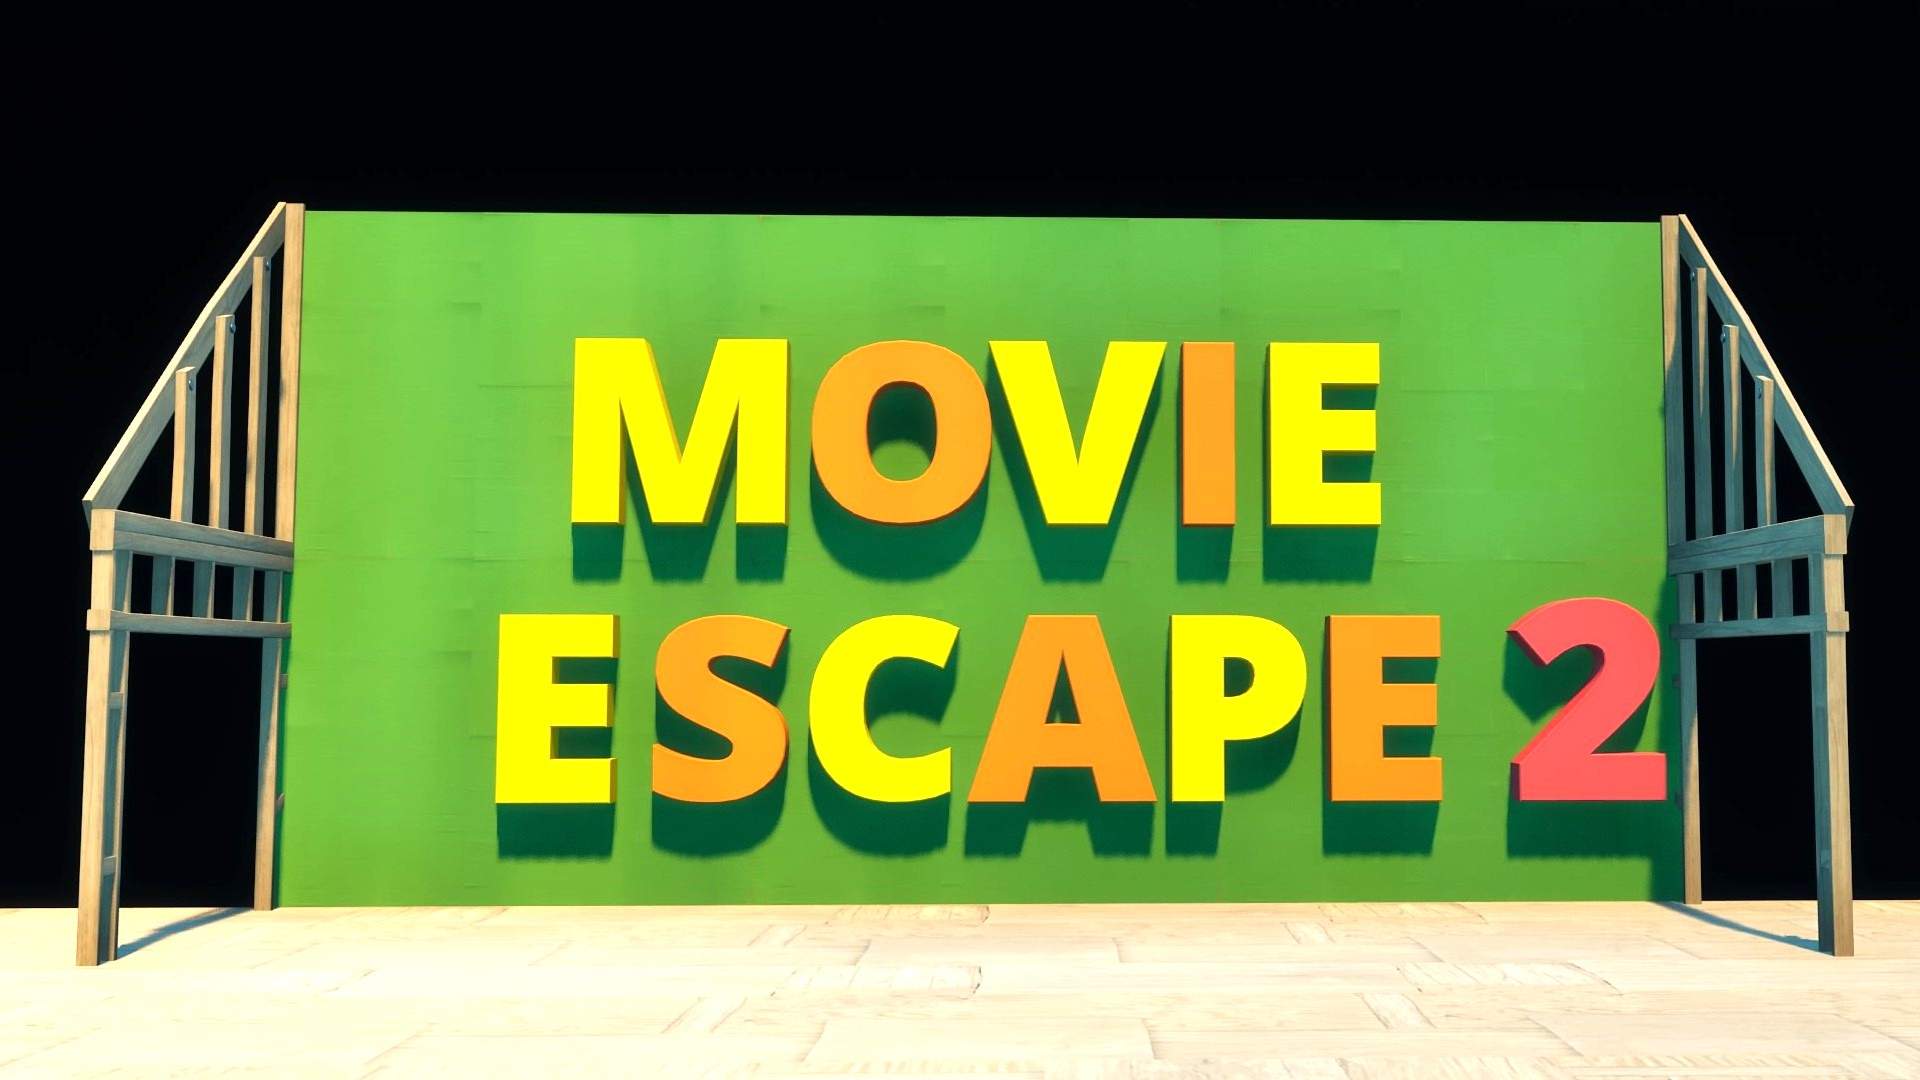 Movie escape 2